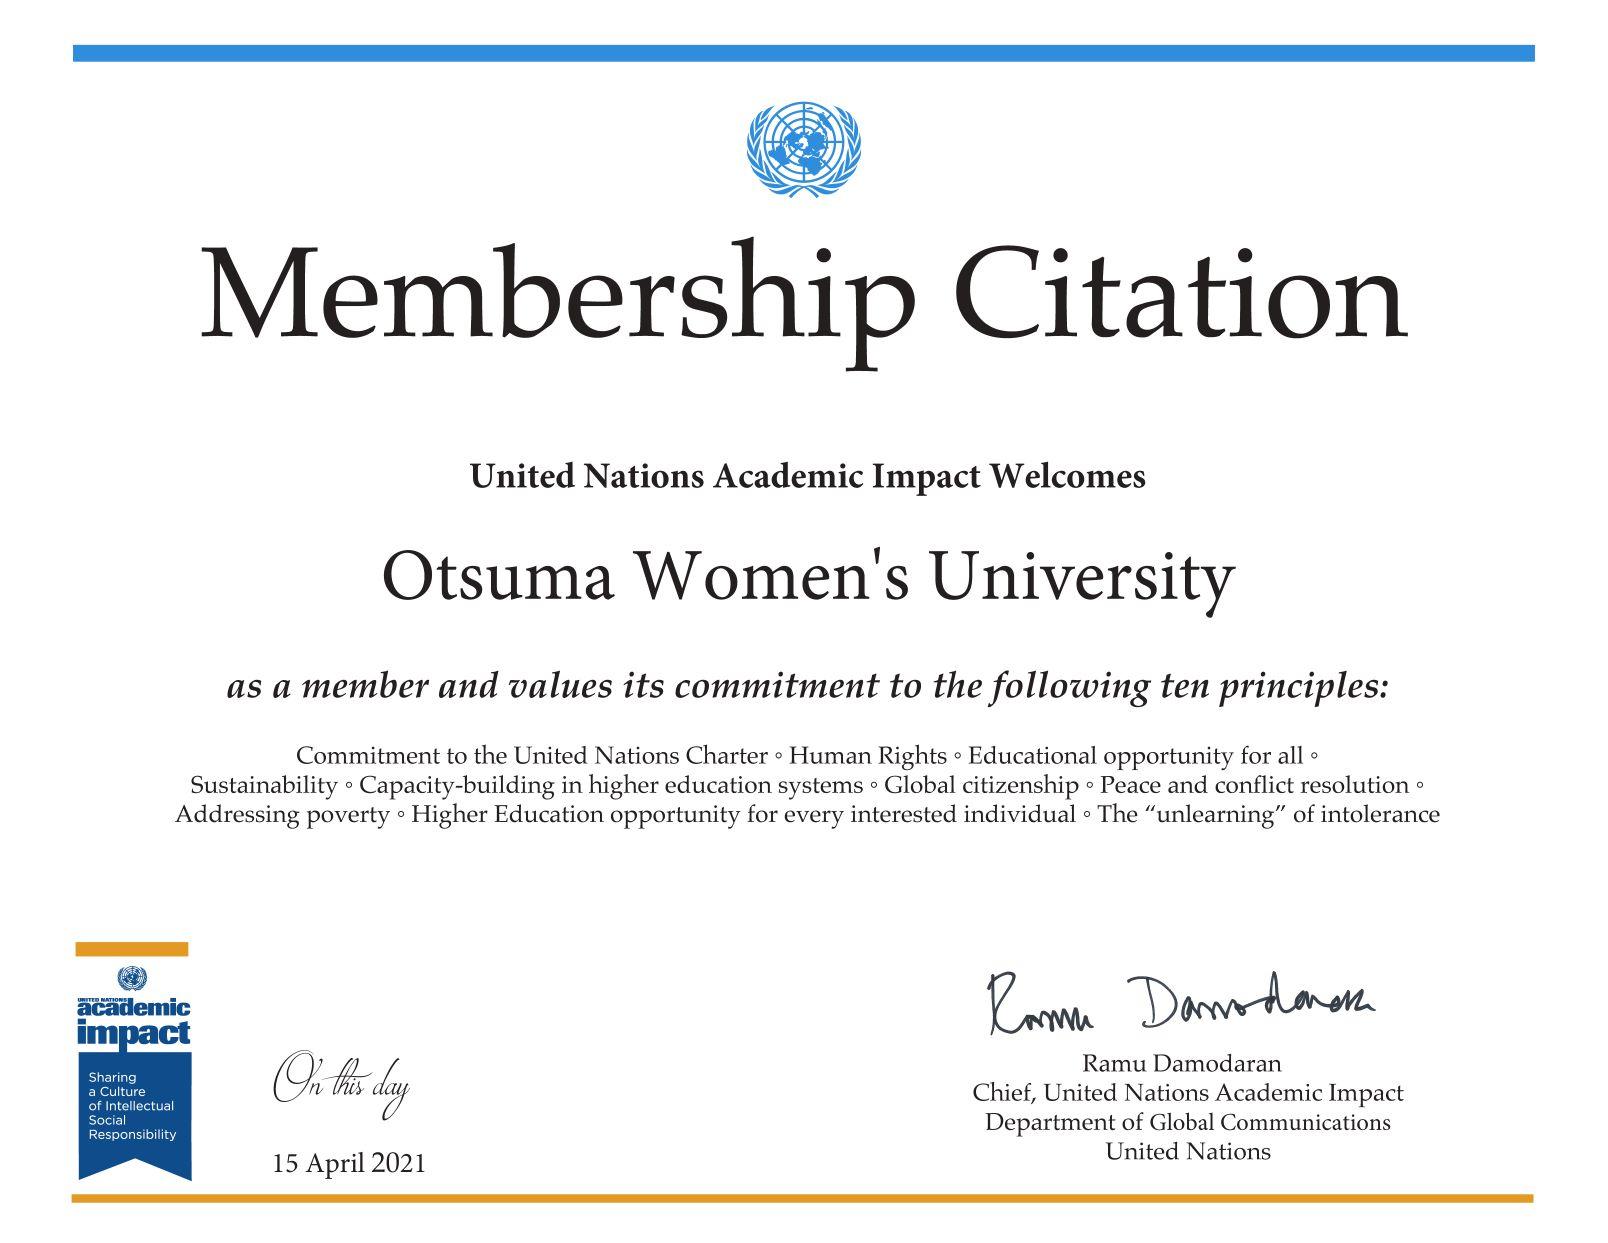 大妻女子大学が「国連アカデミック・インパクト」に参加 -- 国連原則に即した取り組みを展開